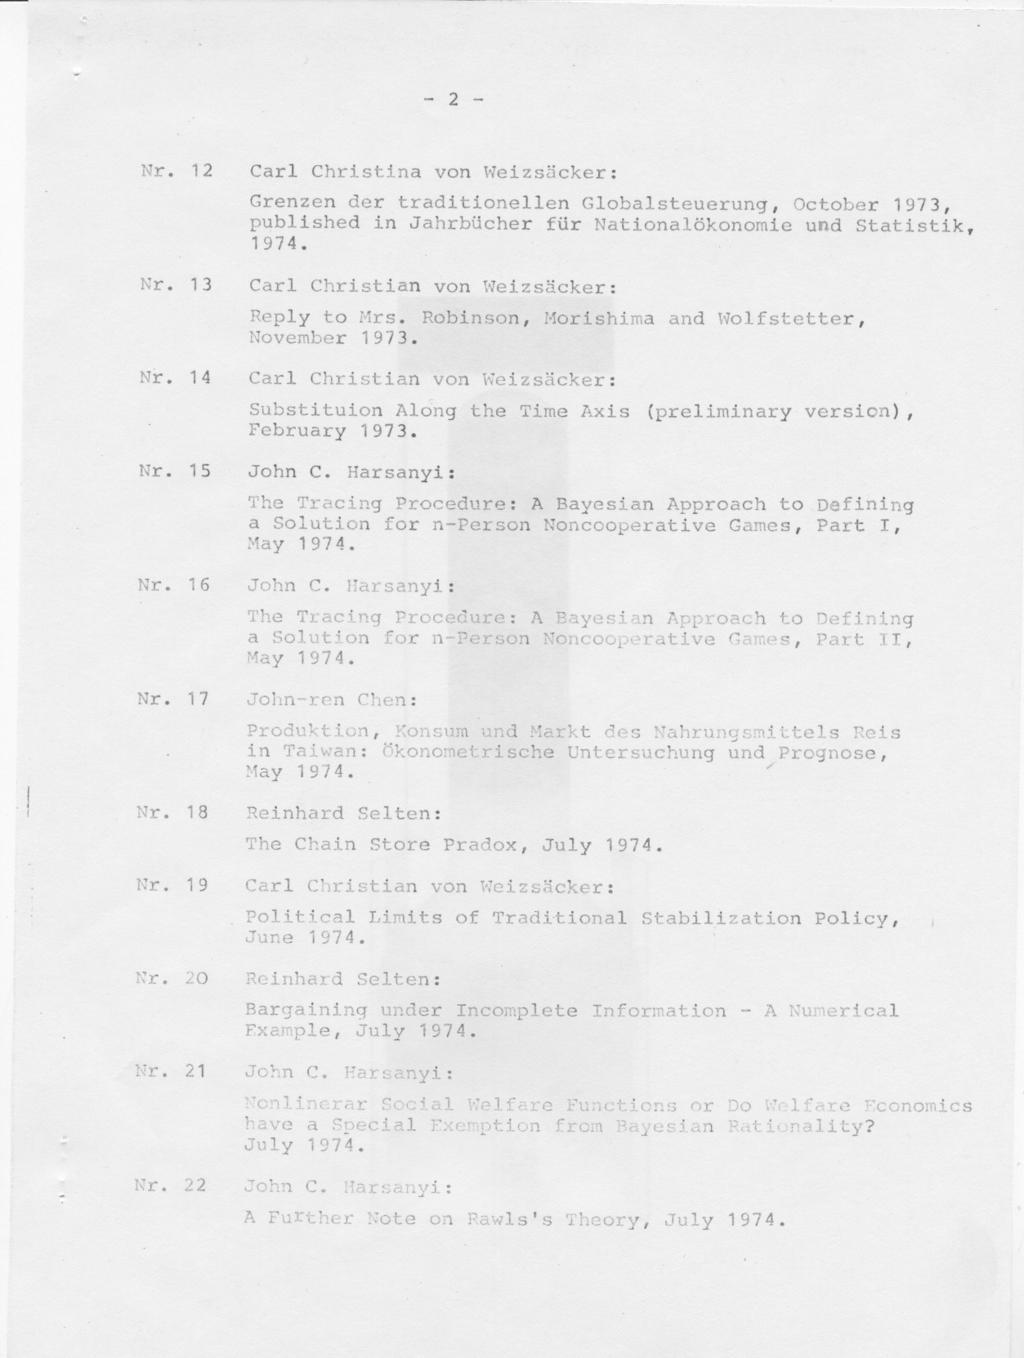 - 2 - Nr. 12 Nr. 13 Nr. 14 Nr. 15 Carl Christina von Weizsäcker: Grenzen der traditionellen Globalsteuerung, October 1973, published in Jahrbücher für Nationalökonomie und Statistik. 1974.